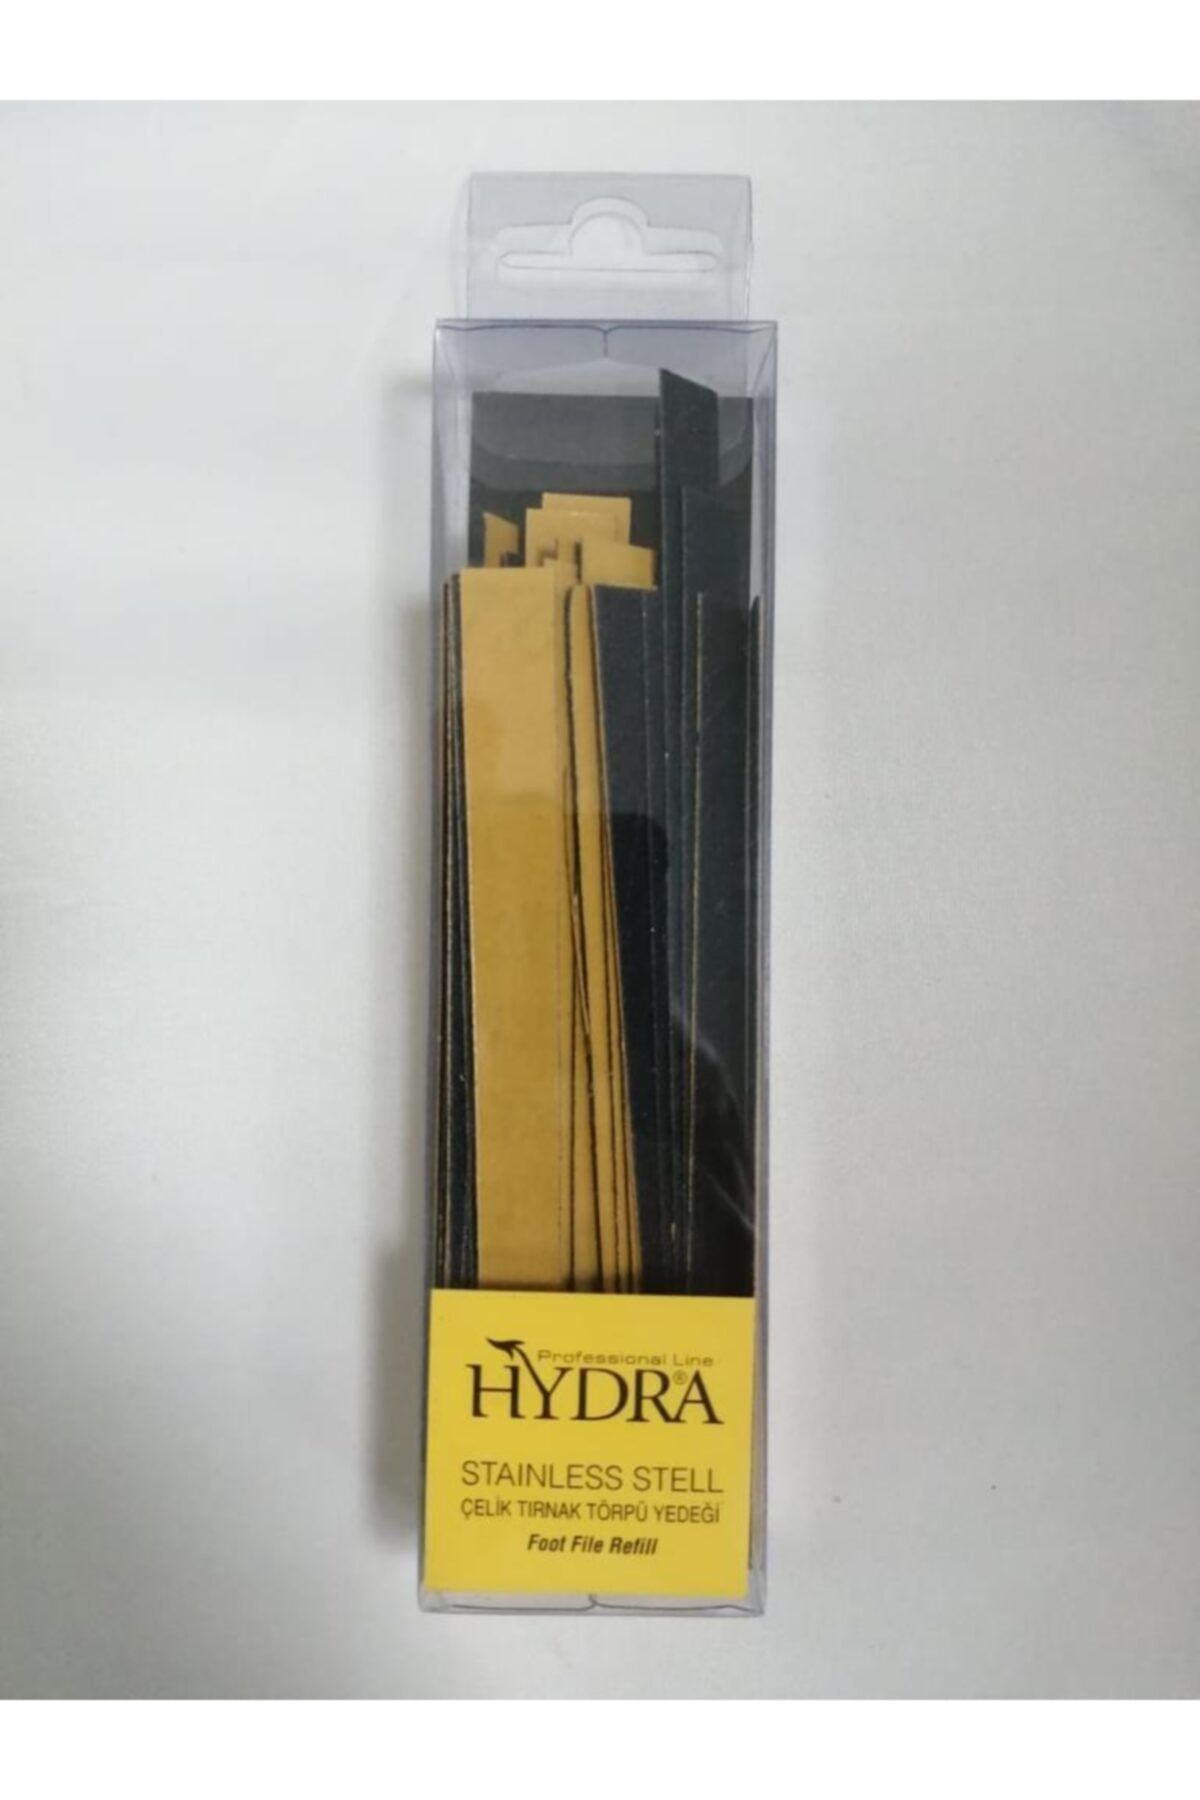 Hydra Çelik Tırnak Törpü Yedeği 50 Adet Hd-2224